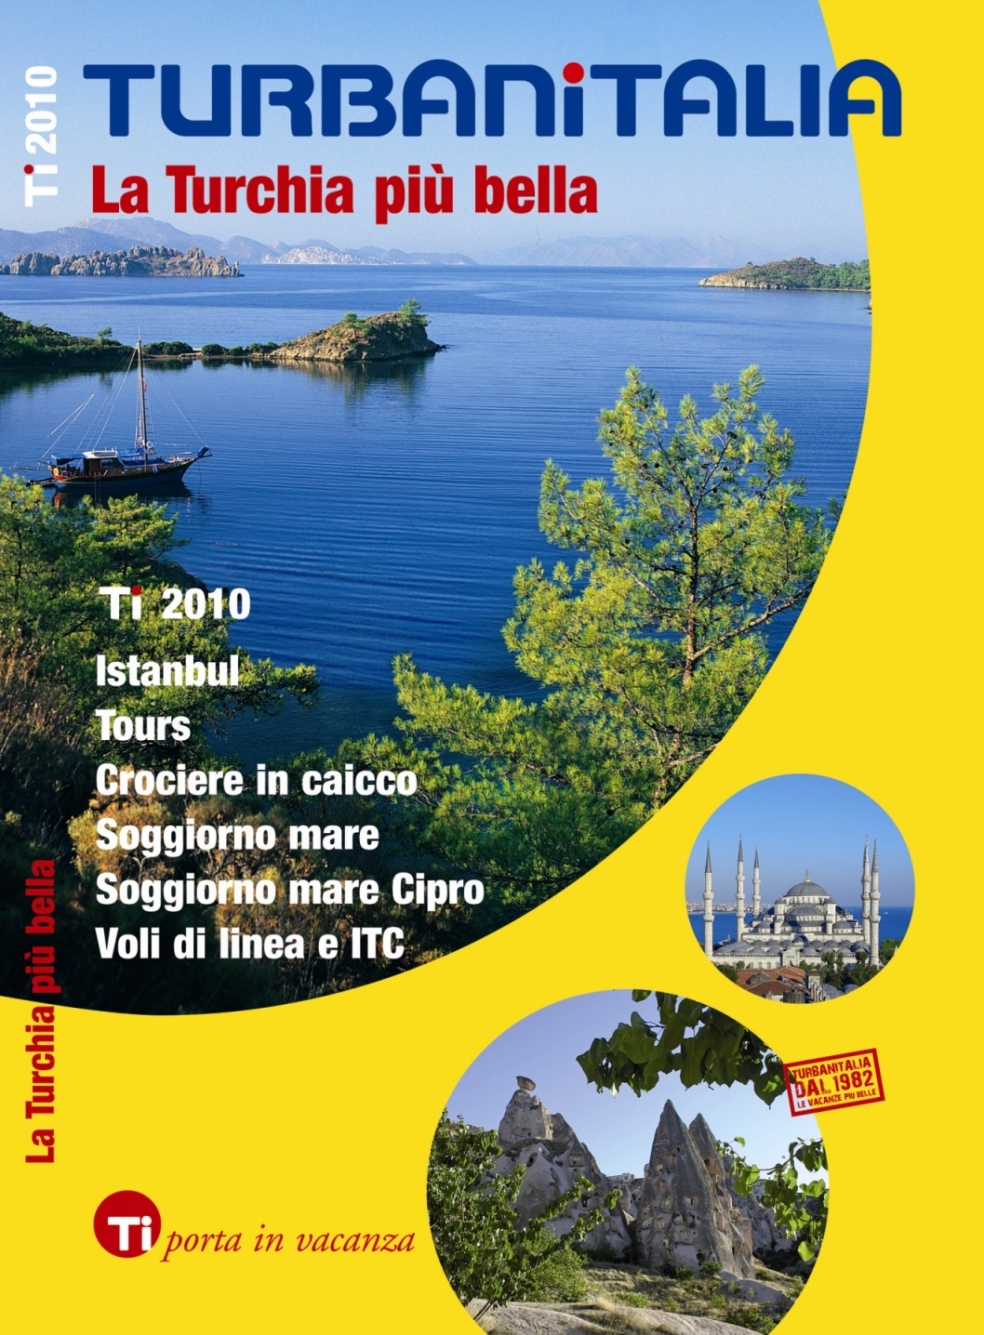 Turbanitalia presenta alla Bit i nuovi cataloghi